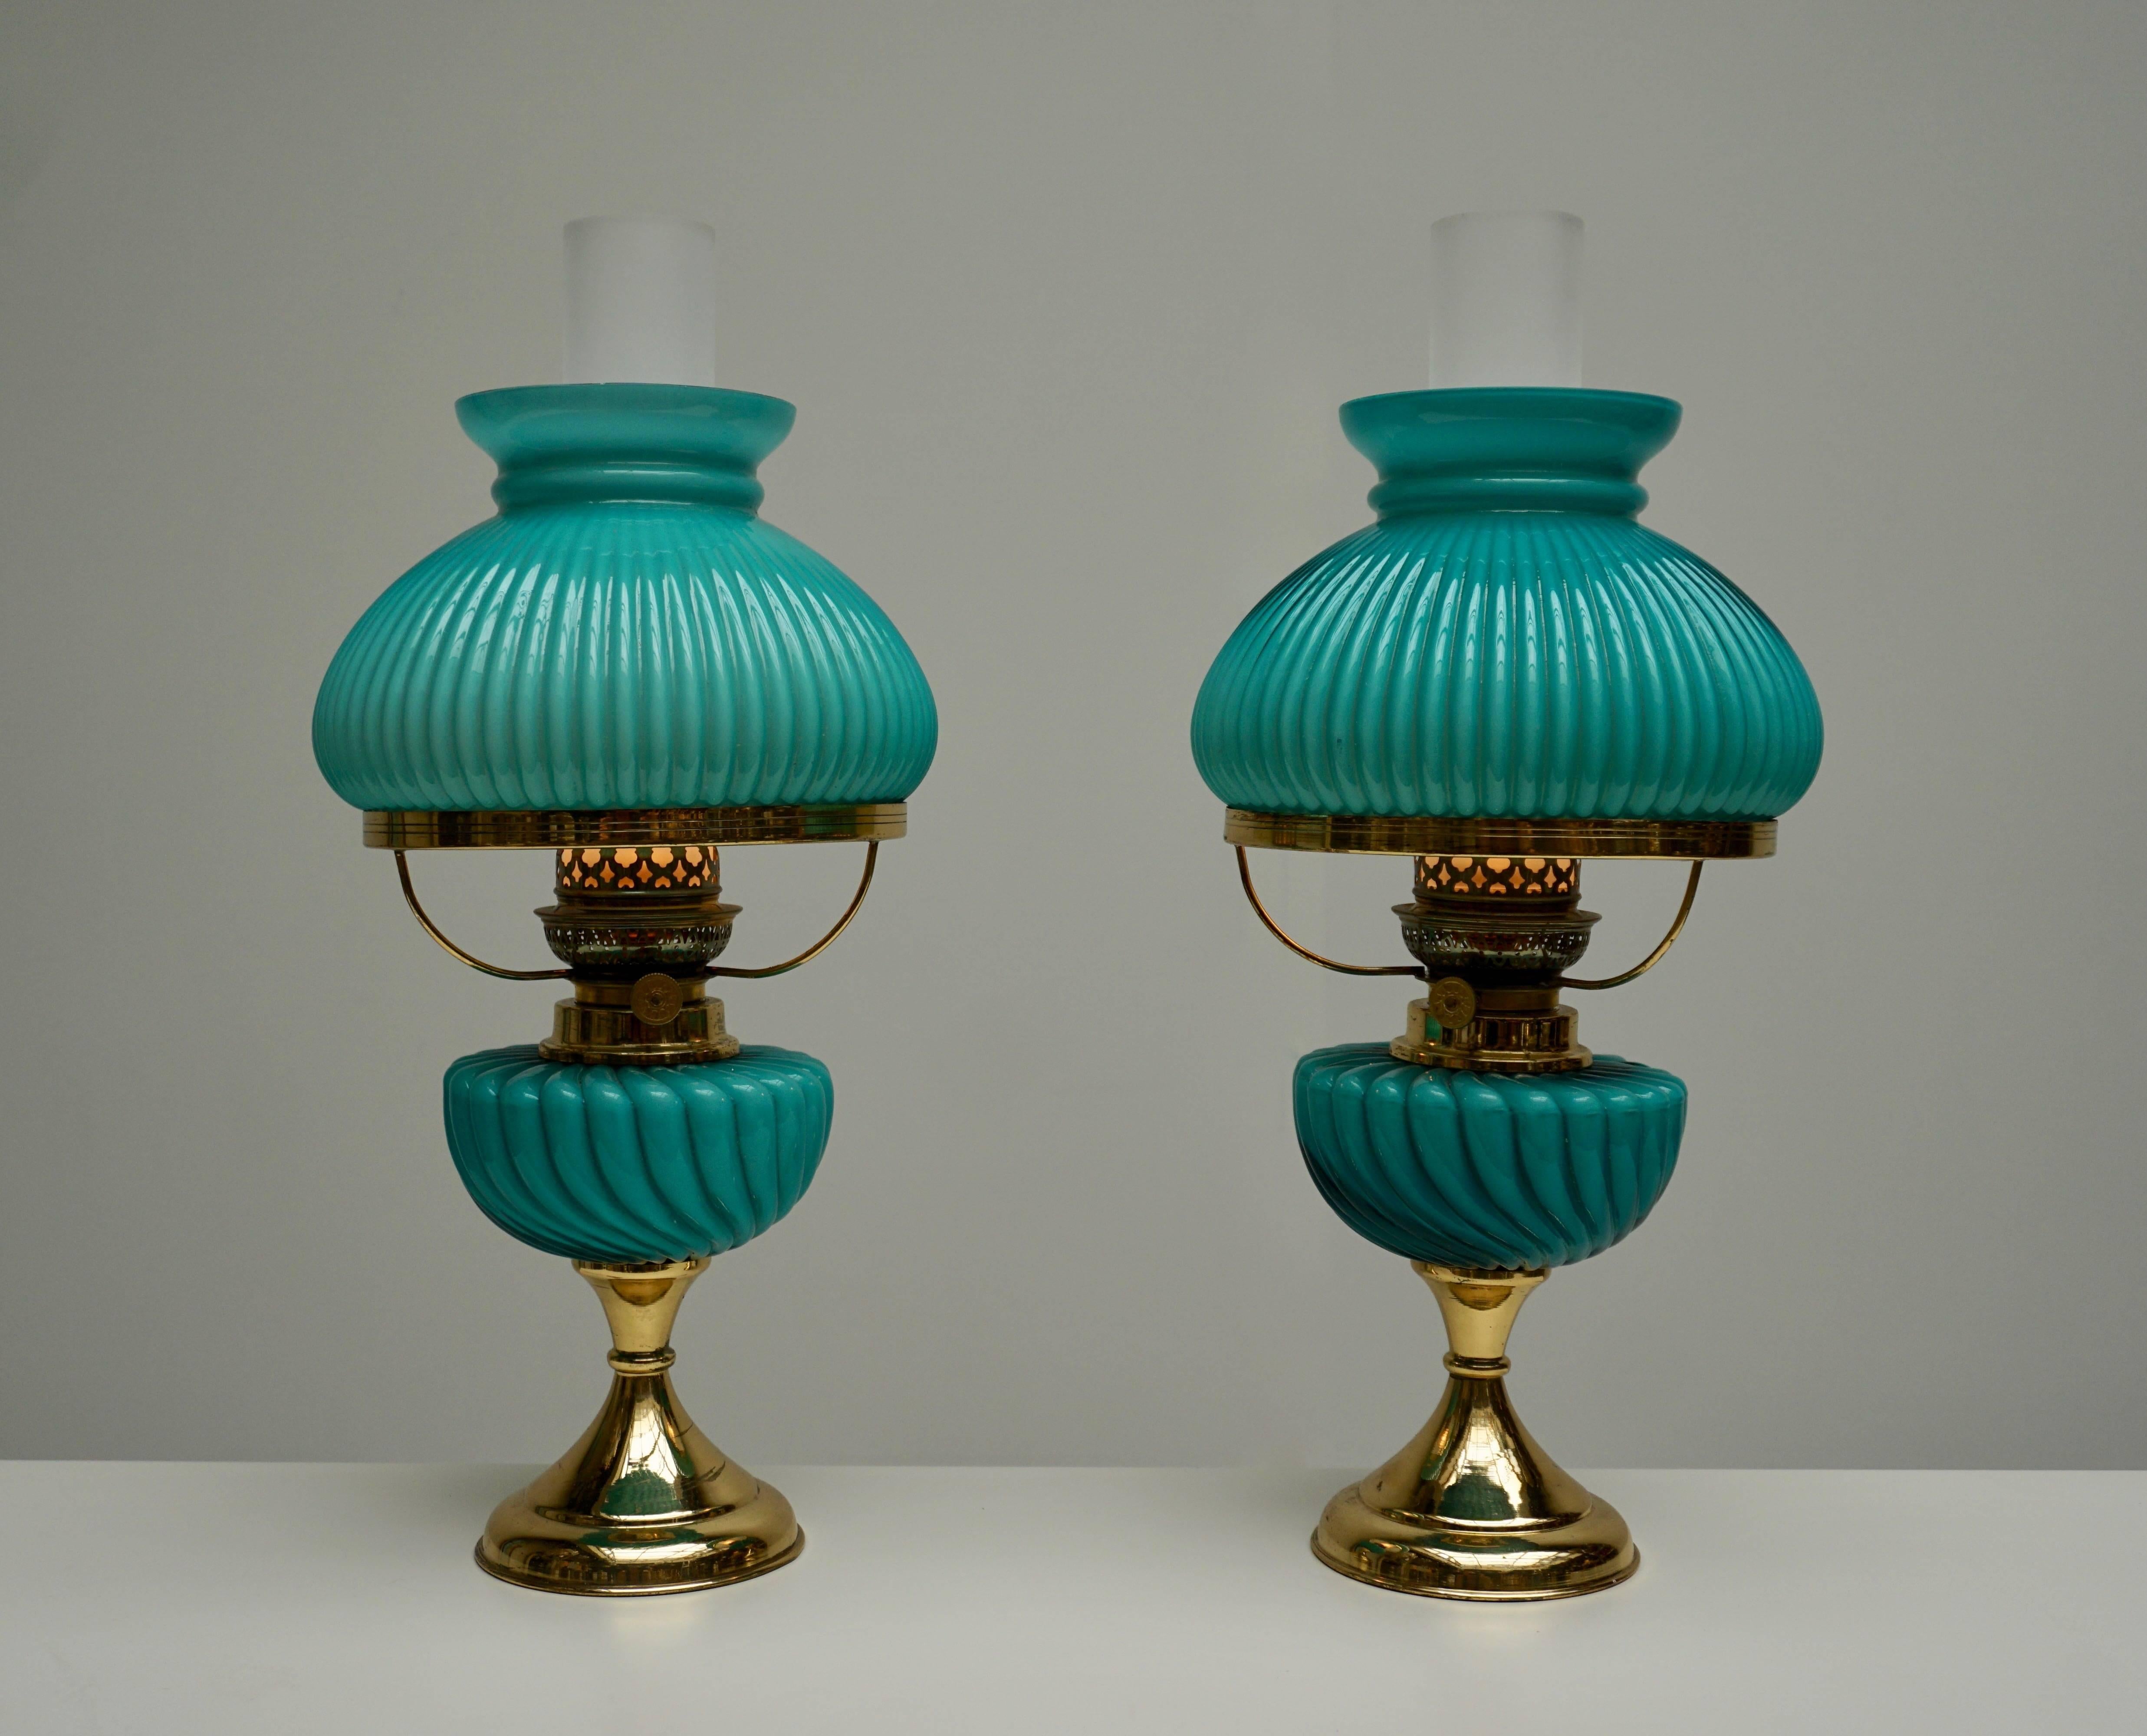 Deux lampes de table italiennes en verre de Murano.
Mesure : Diamètre 20 cm.
Hauteur de l'abat-jour en verre bleu 39 cm.
Une ampoule E14.